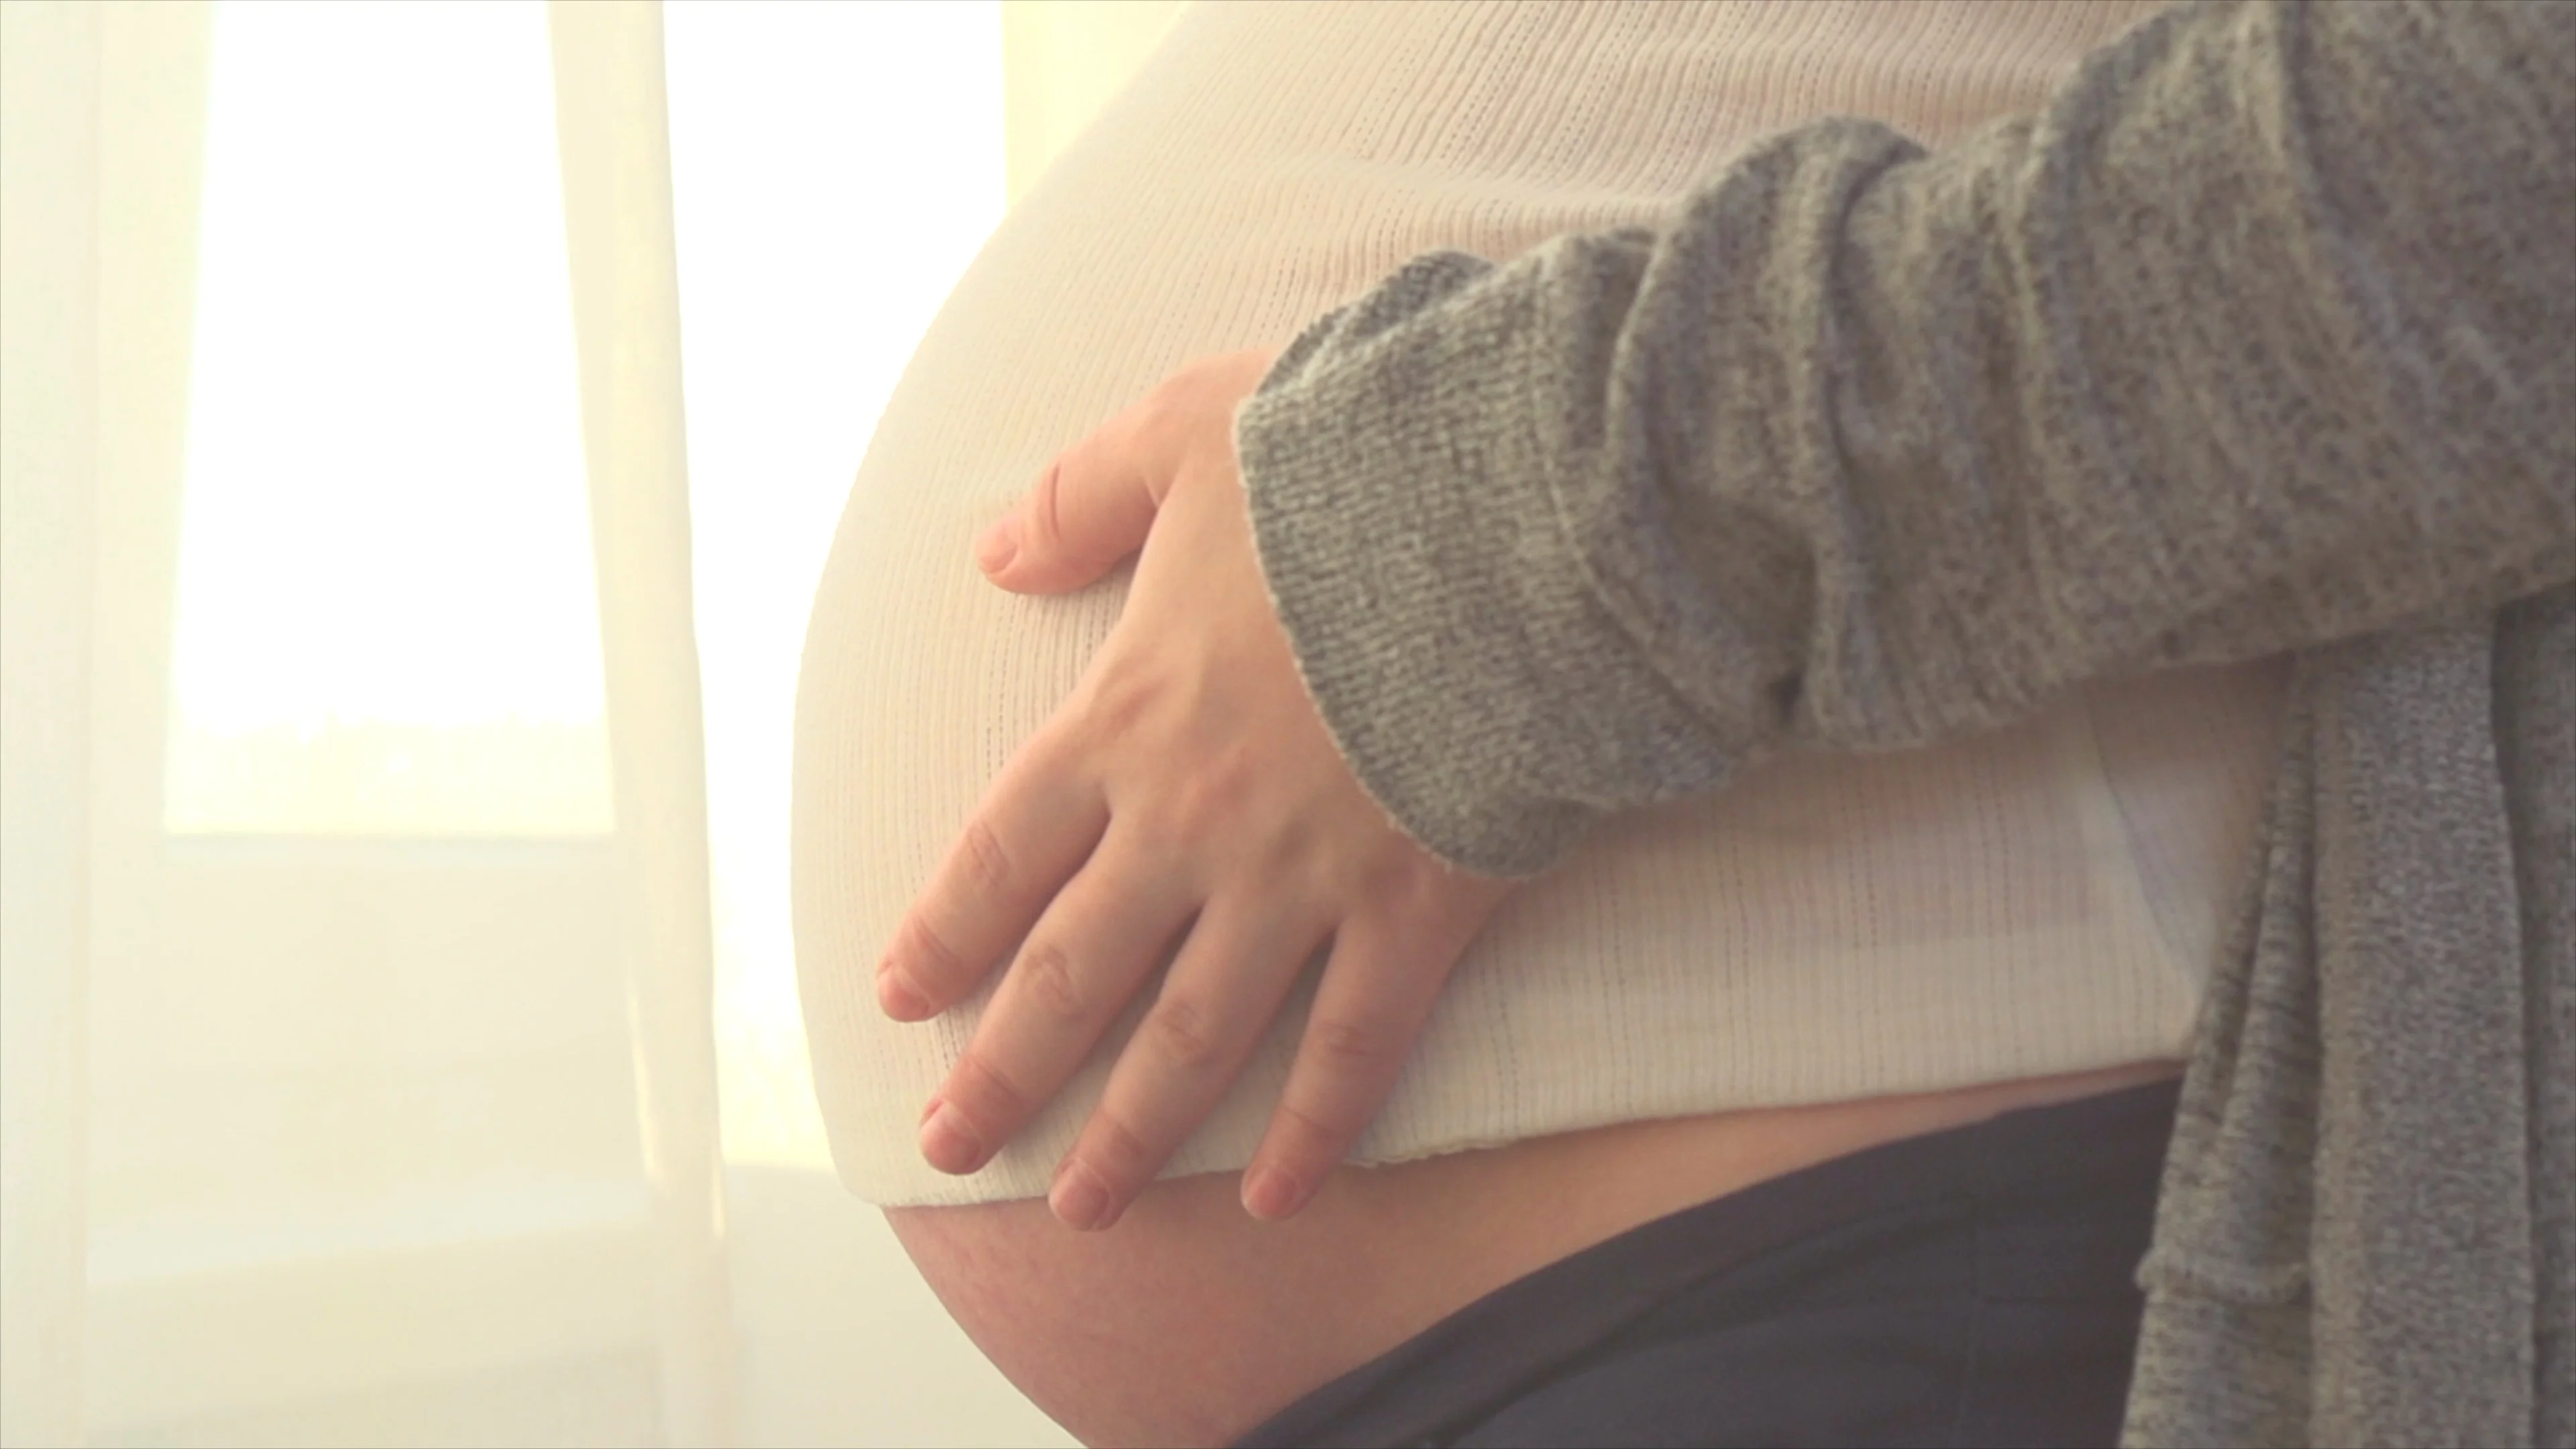 Pregnant Woman Video